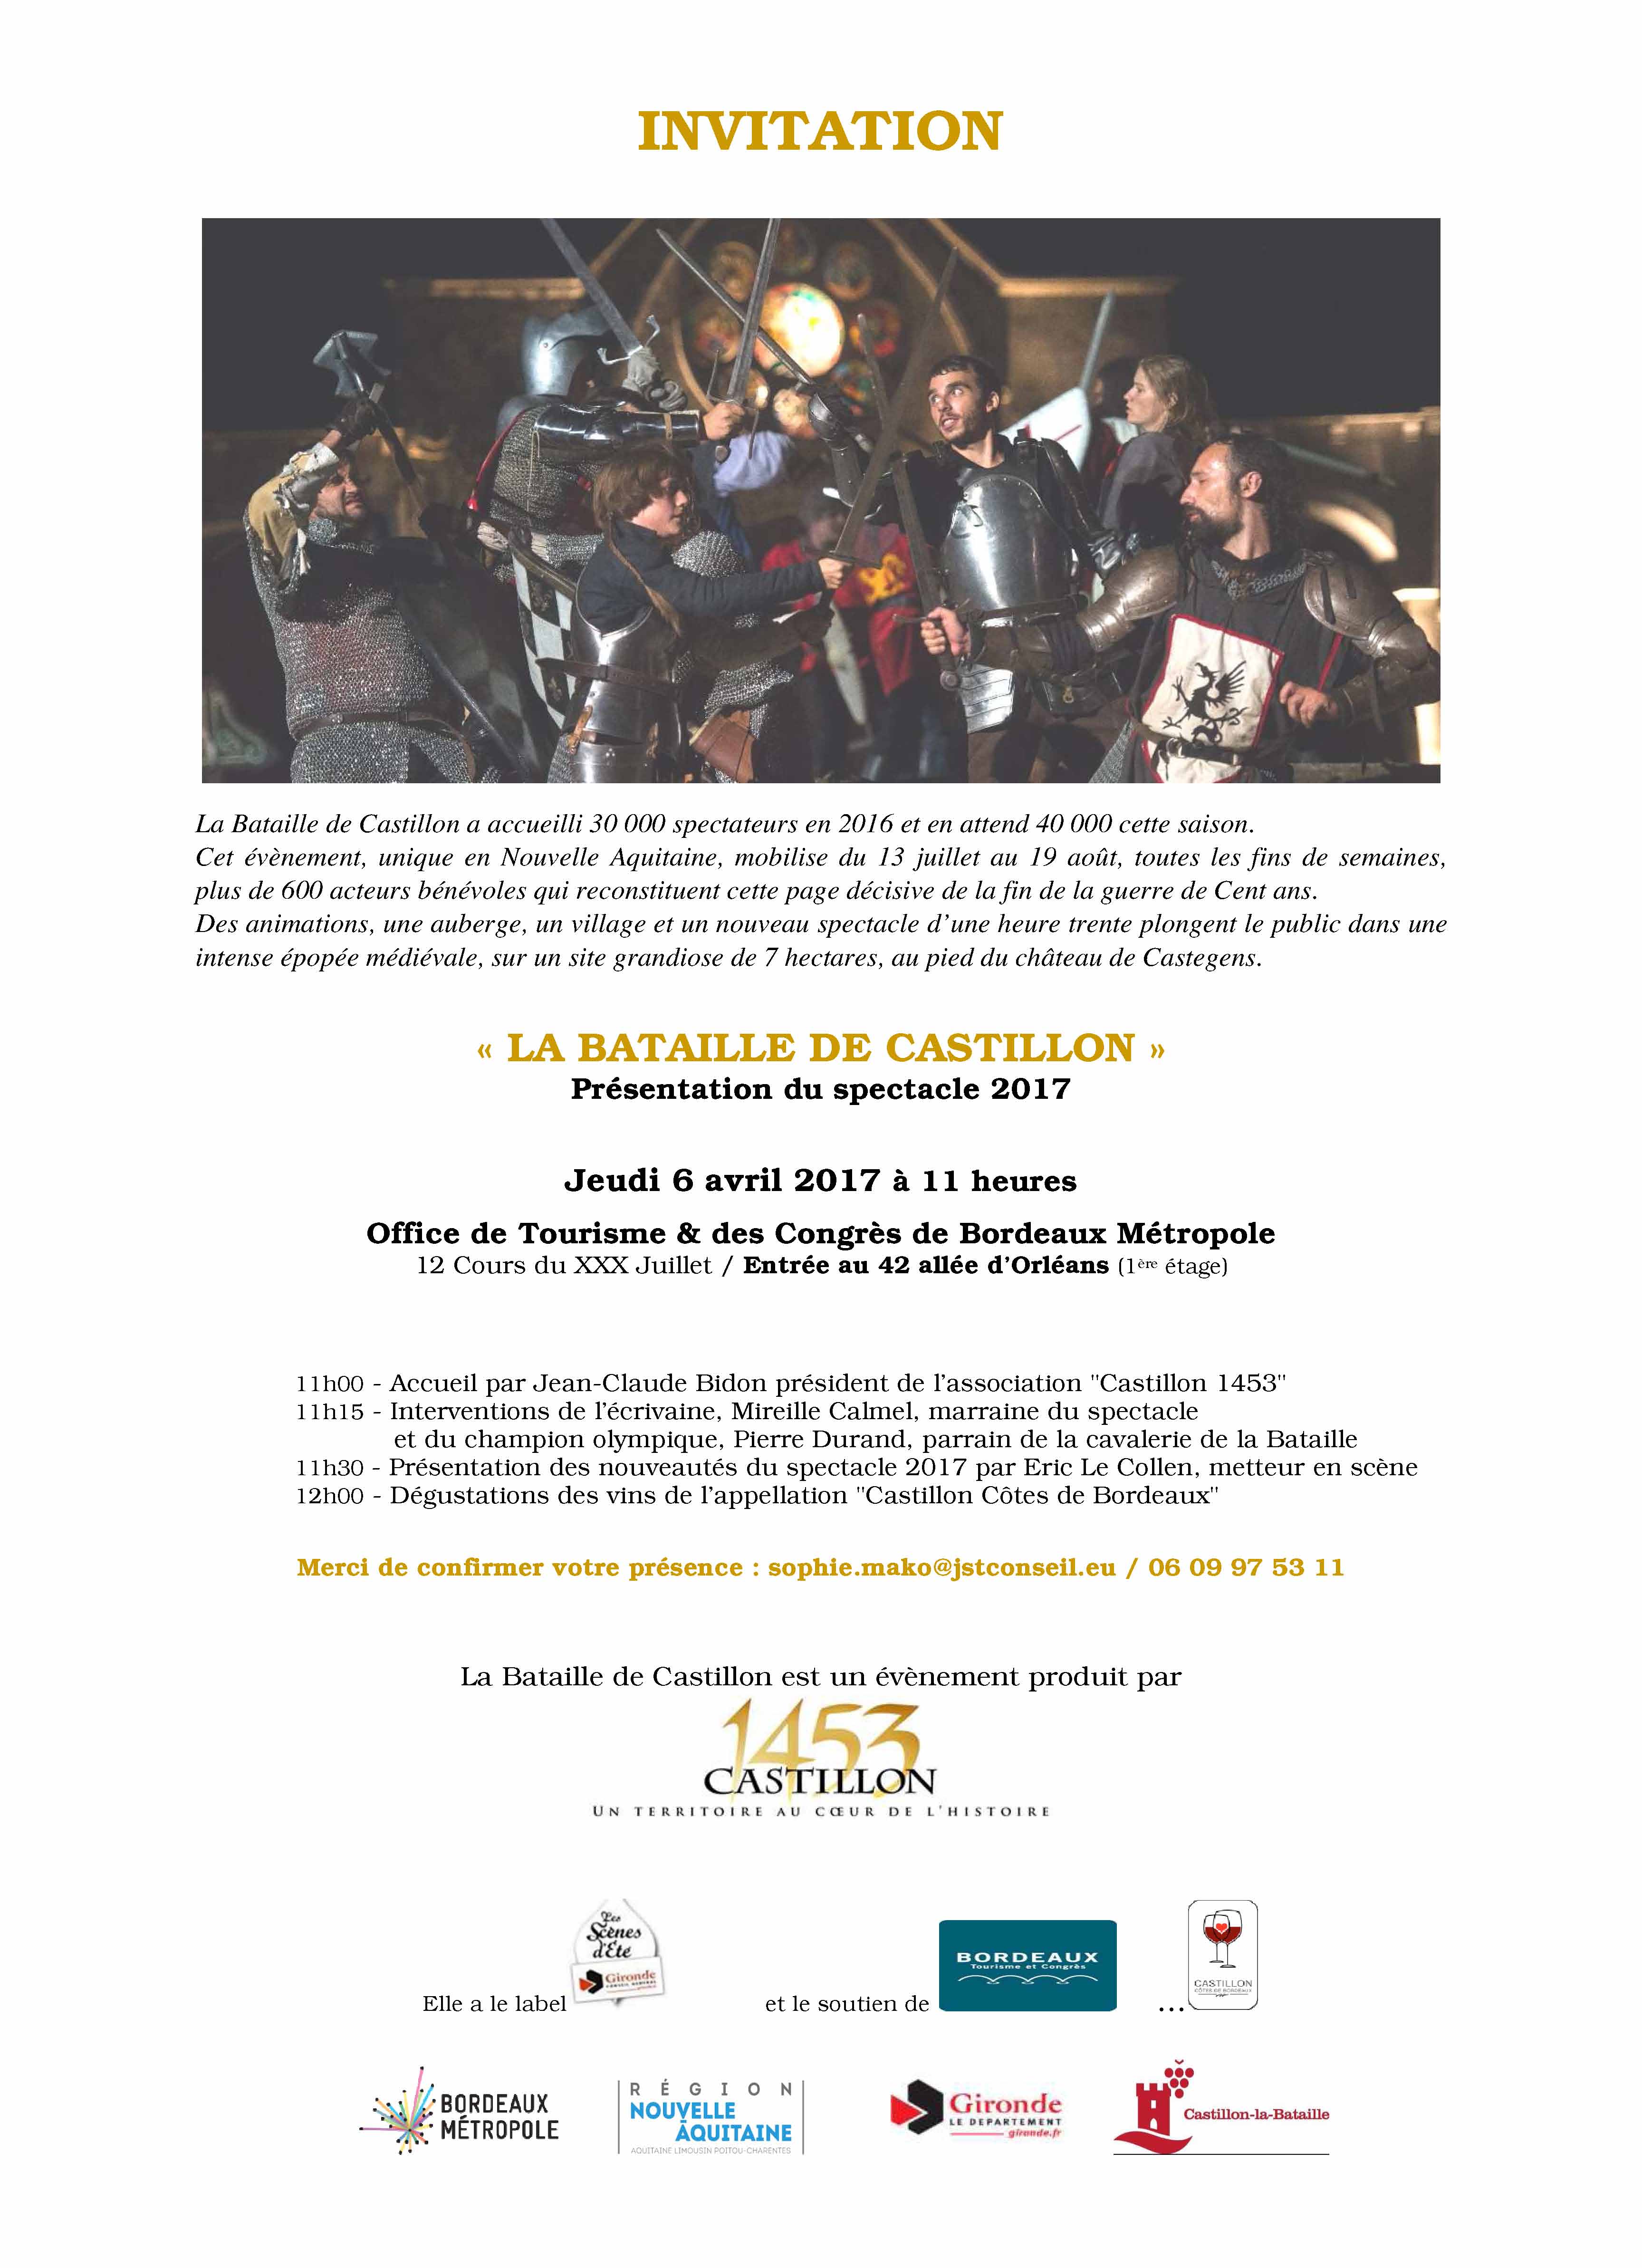 la-bataille-de-castillon-invitation-presentation-spectacle-6-avril